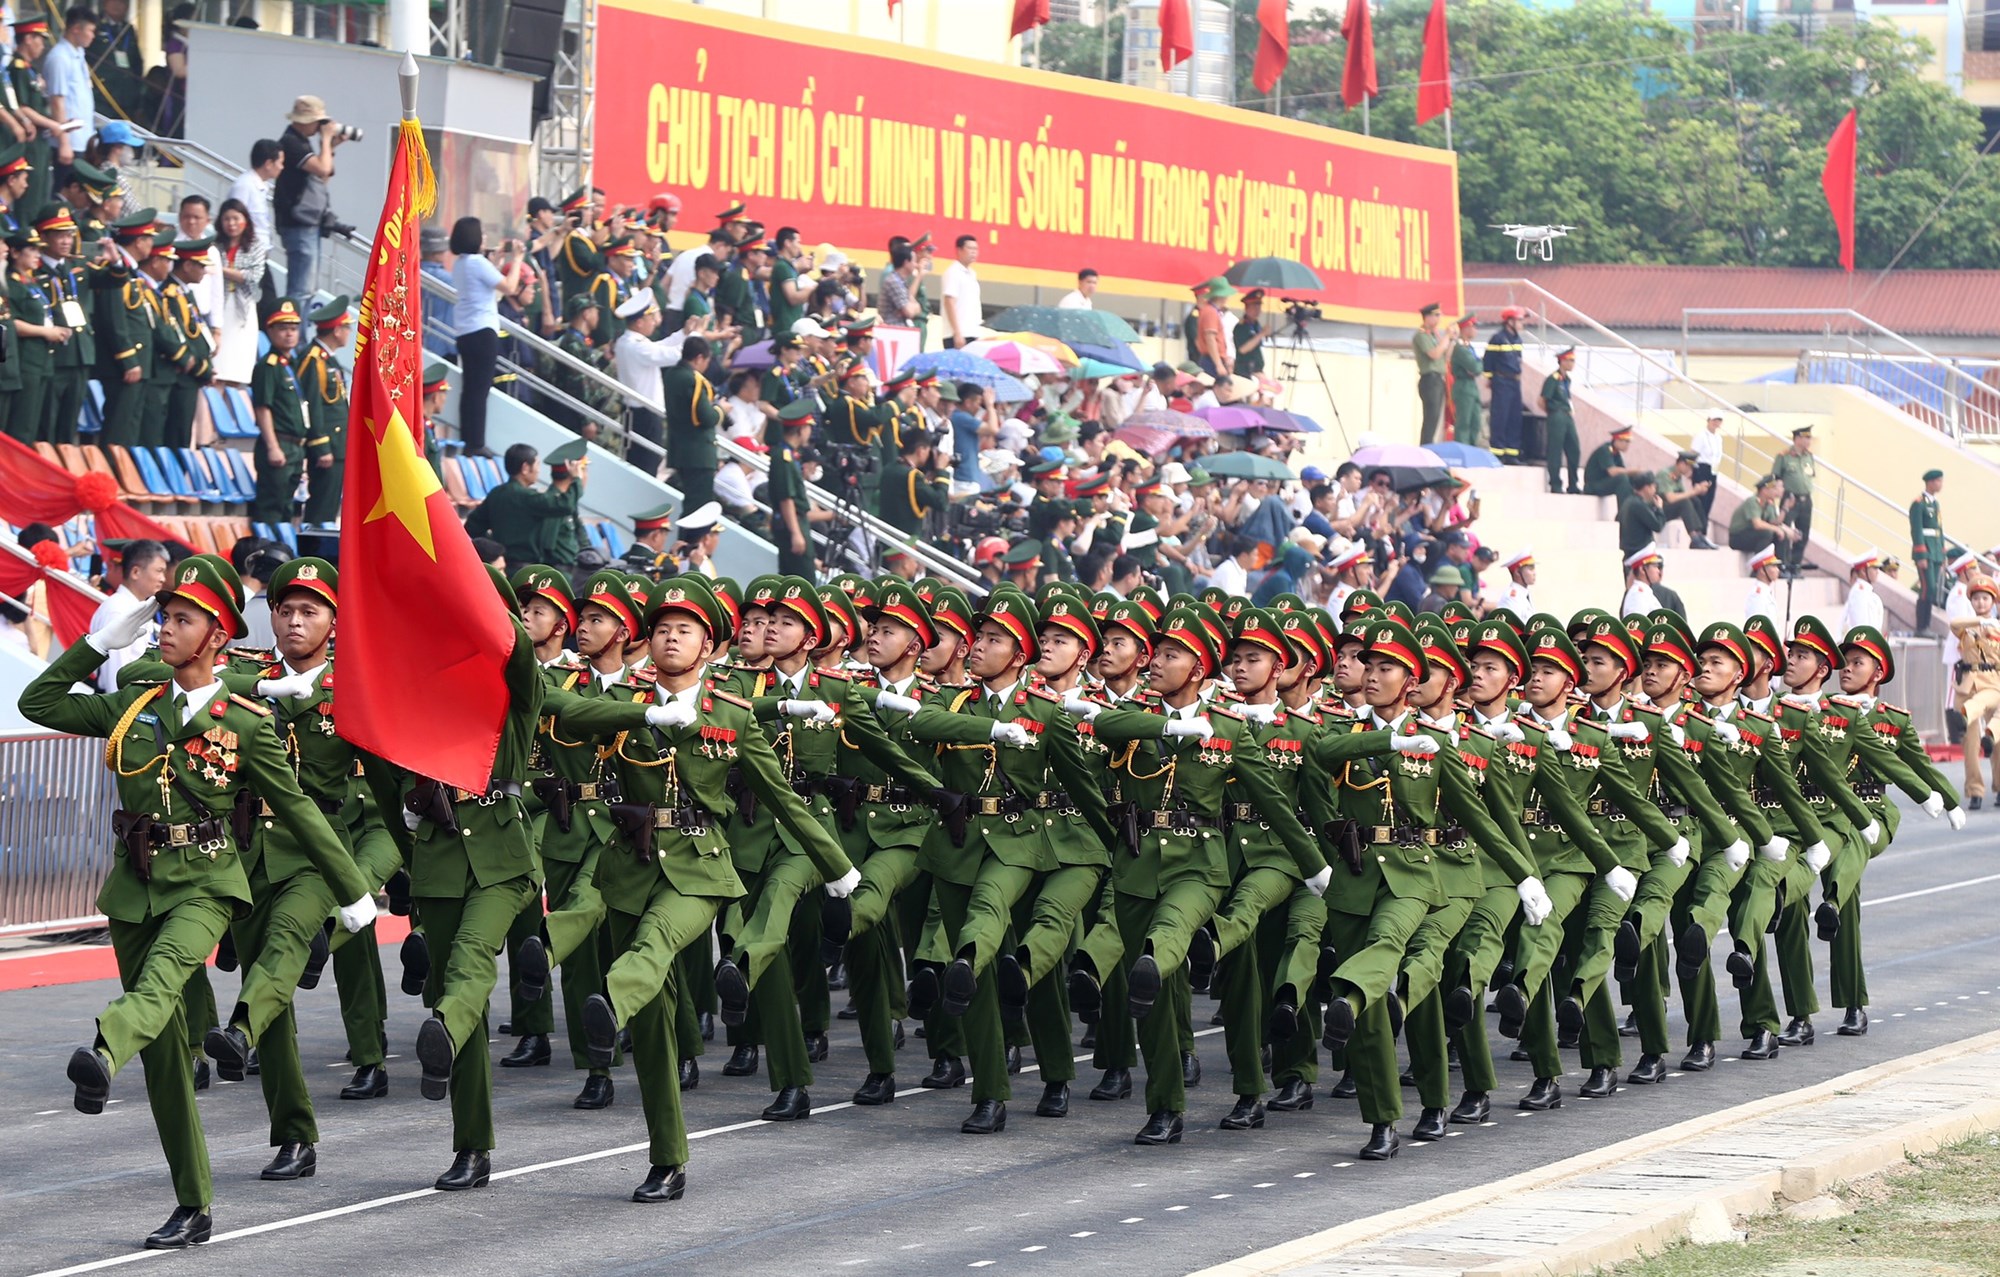 Tổng duyệt diễu binh, diễu hành kỷ niệm 70 năm Chiến thắng Điện Biên Phủ - ảnh 18